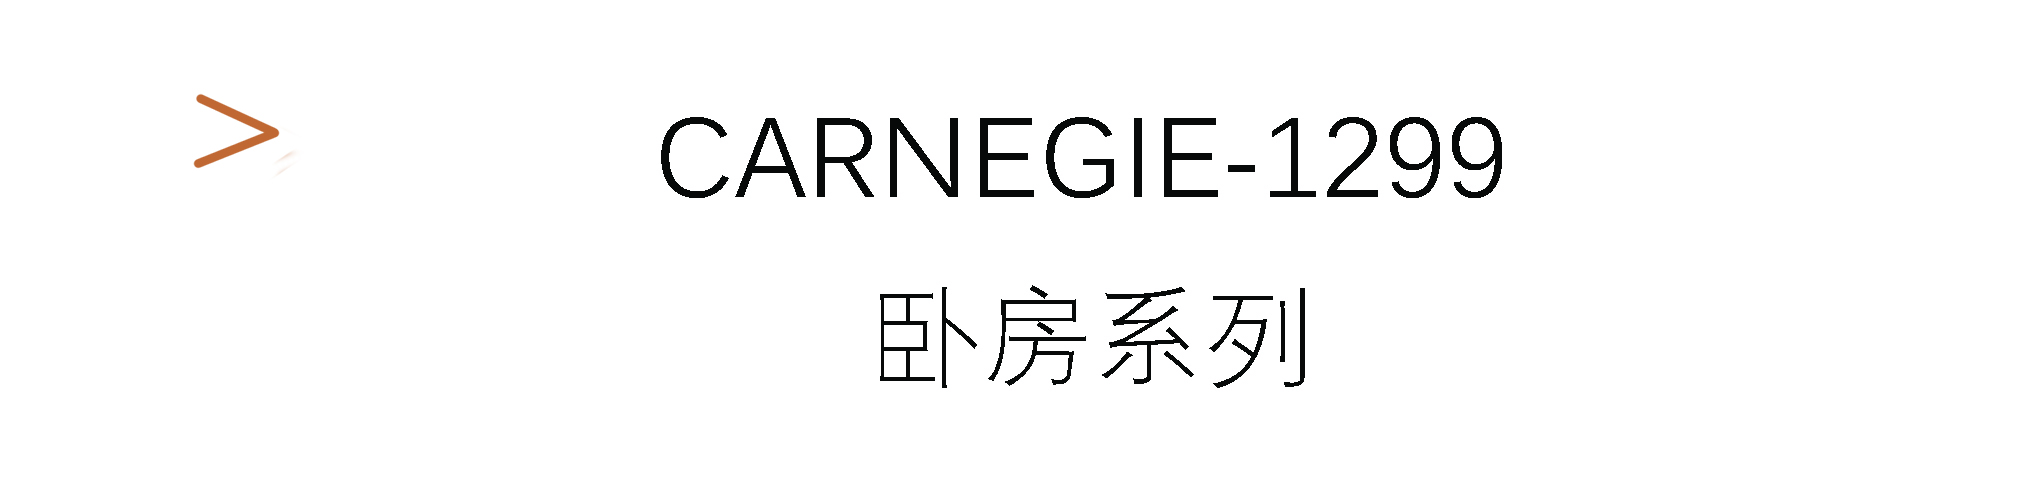 Carnegie-1299